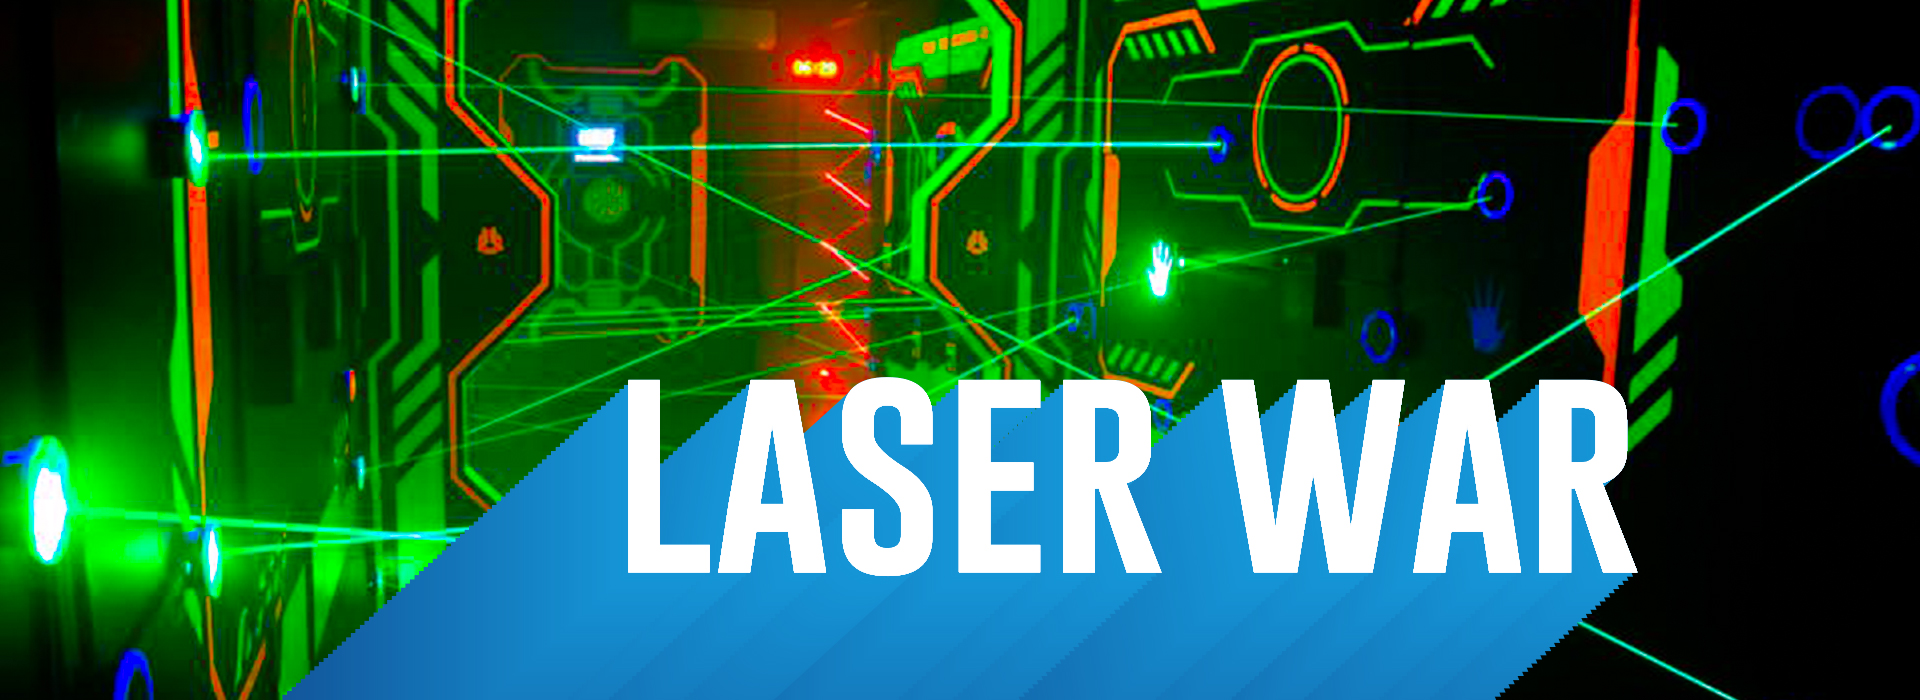 laser war